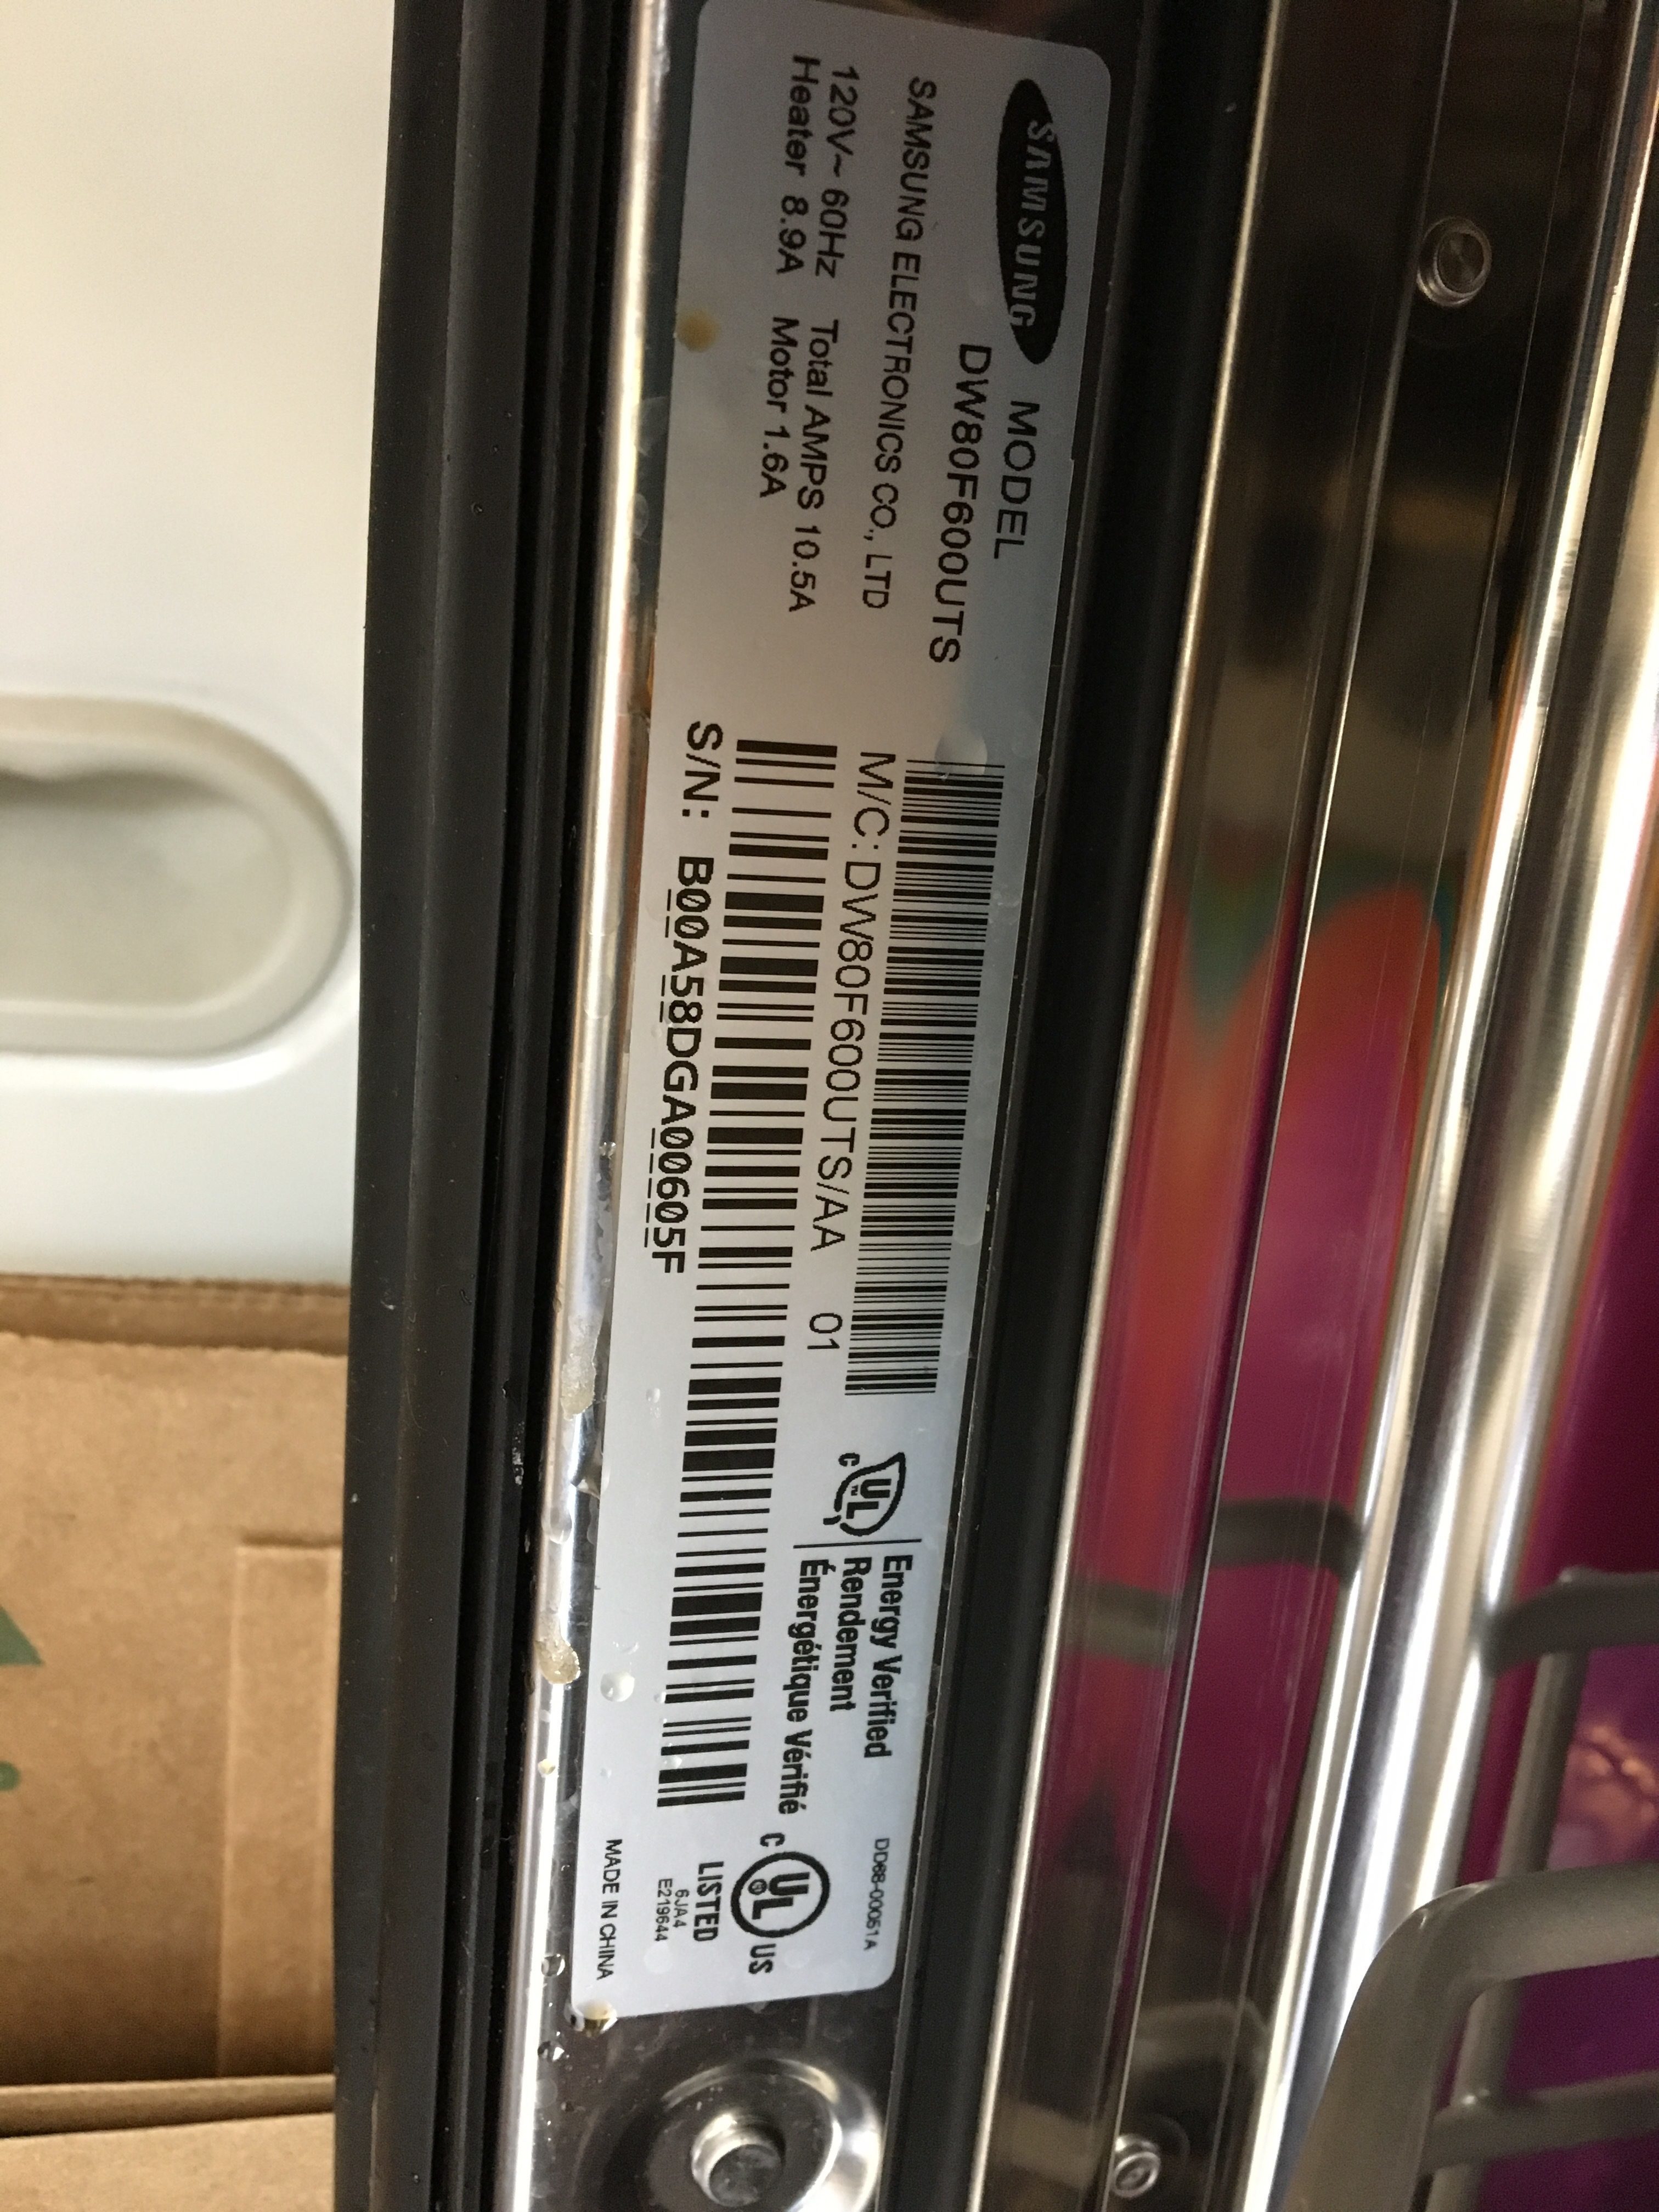 What models of dishwasher does Samsung make?